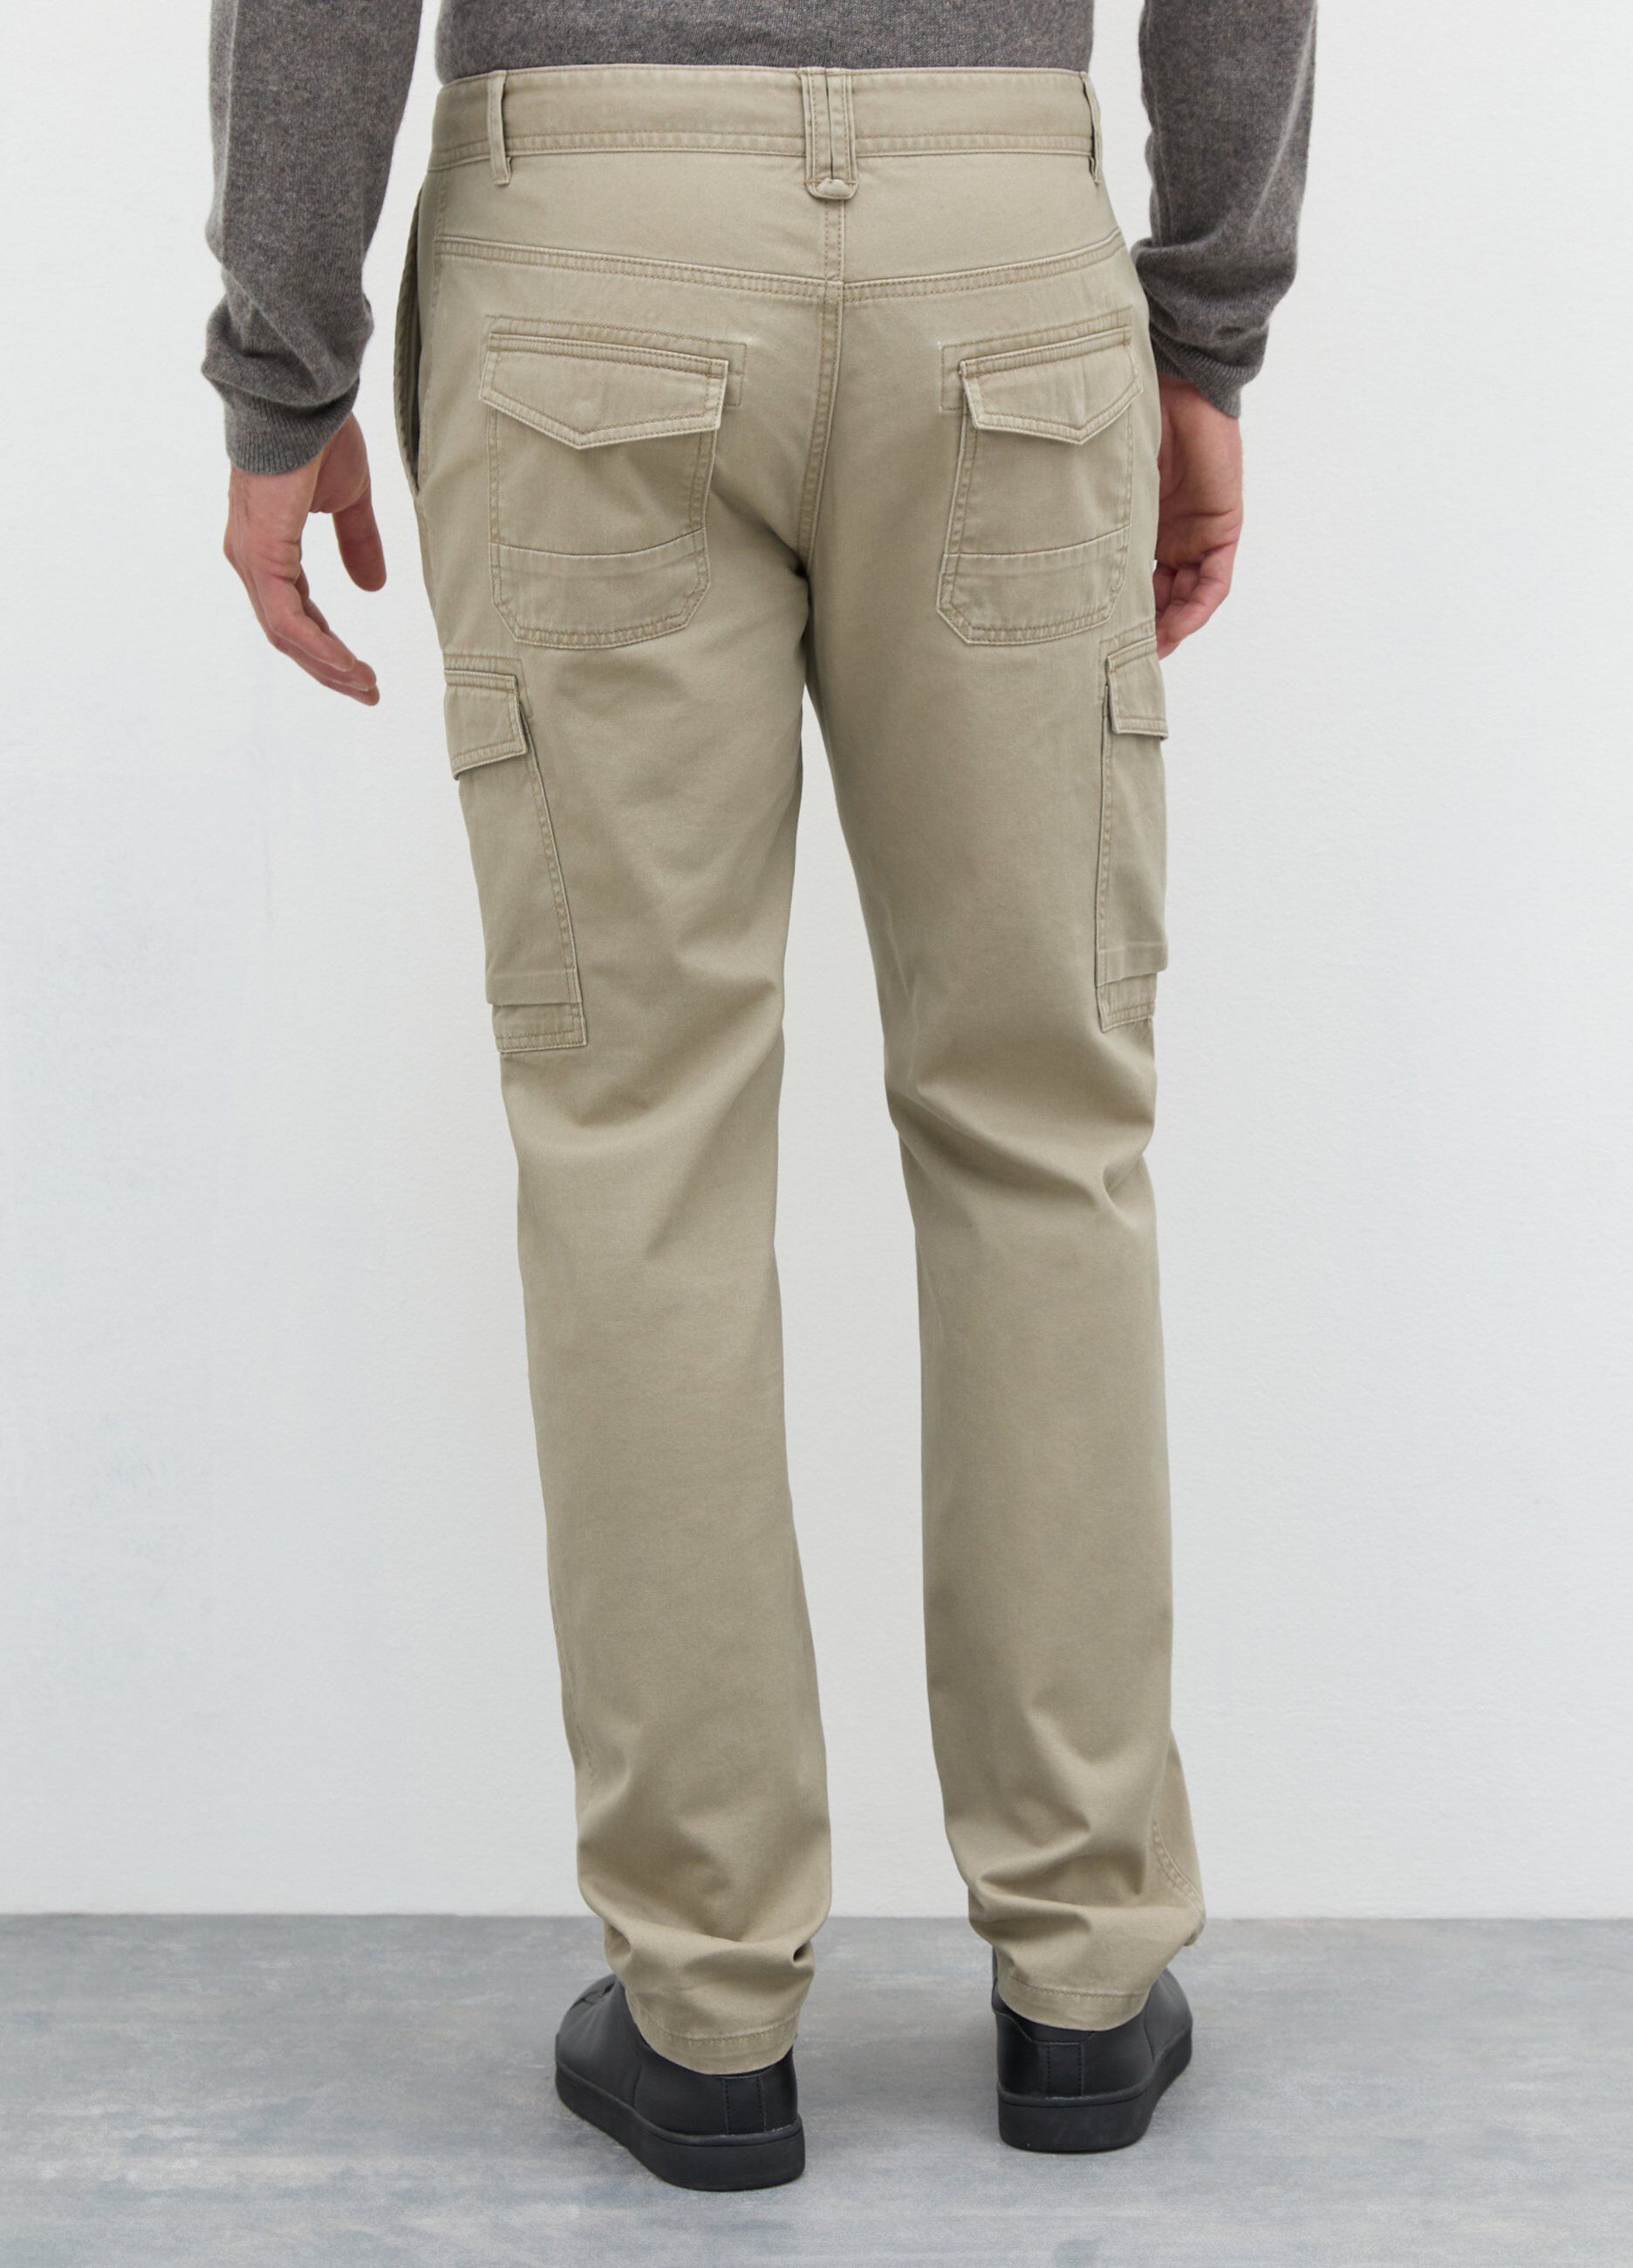 Pantaloni cargo in puro cotone uomo_1